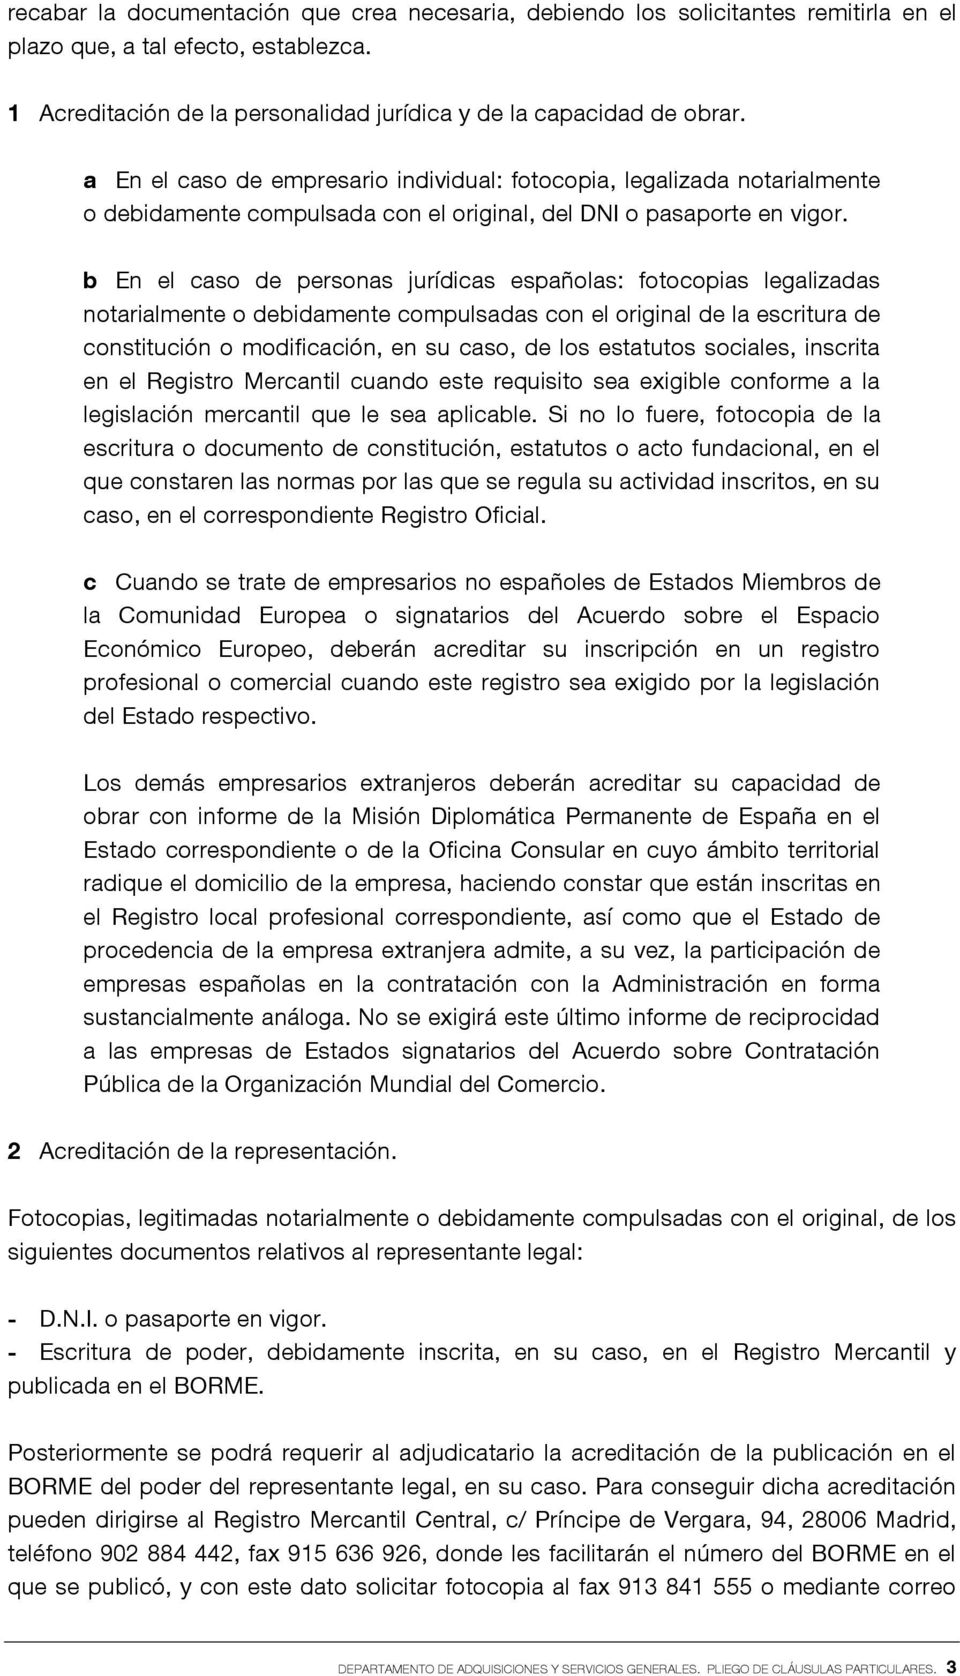 b En el caso de personas jurídicas españolas: fotocopias legalizadas notarialmente o debidamente compulsadas con el original de la escritura de constitución o modificación, en su caso, de los